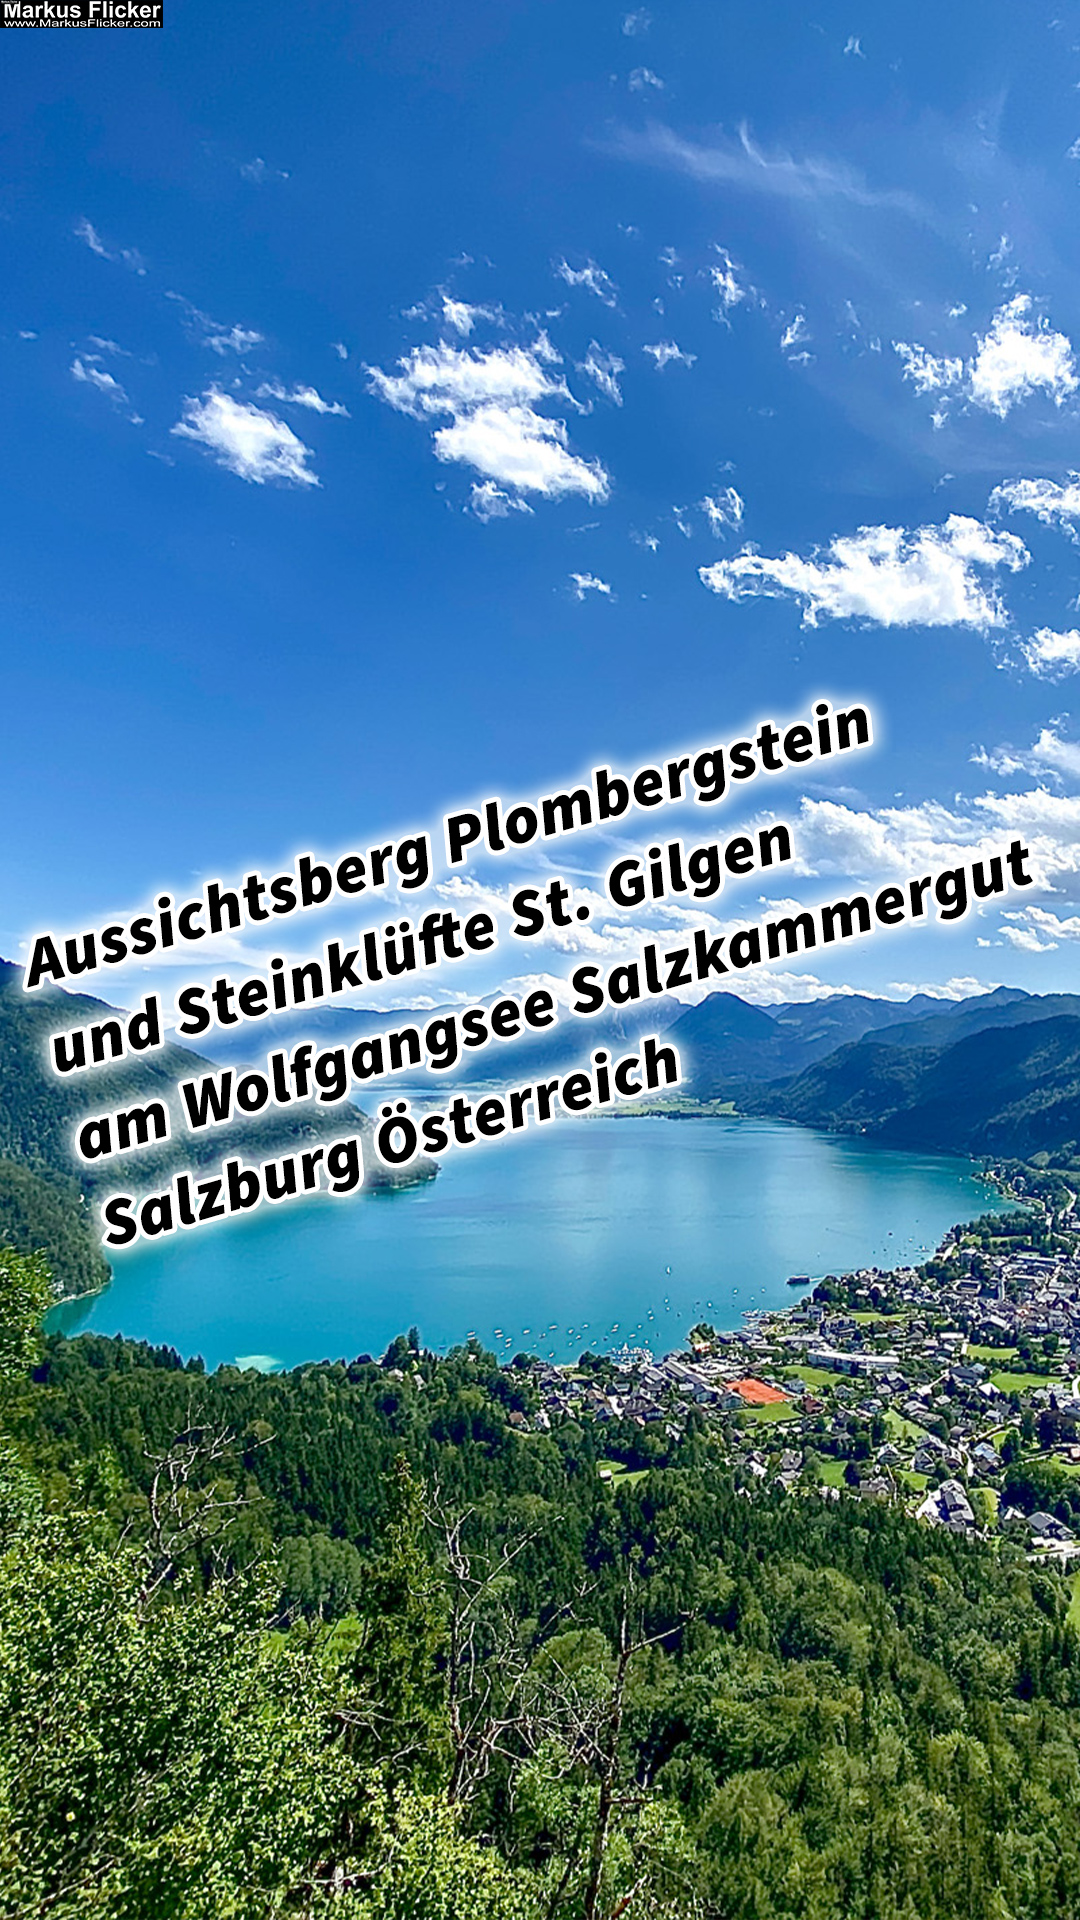 Aussichtsberg Plombergstein und Steinklüfte St. Gilgen am Wolfgangsee Salzkammergut Salzburg Österreich #sommerfrische #visitsalzkammergut #bergeseen